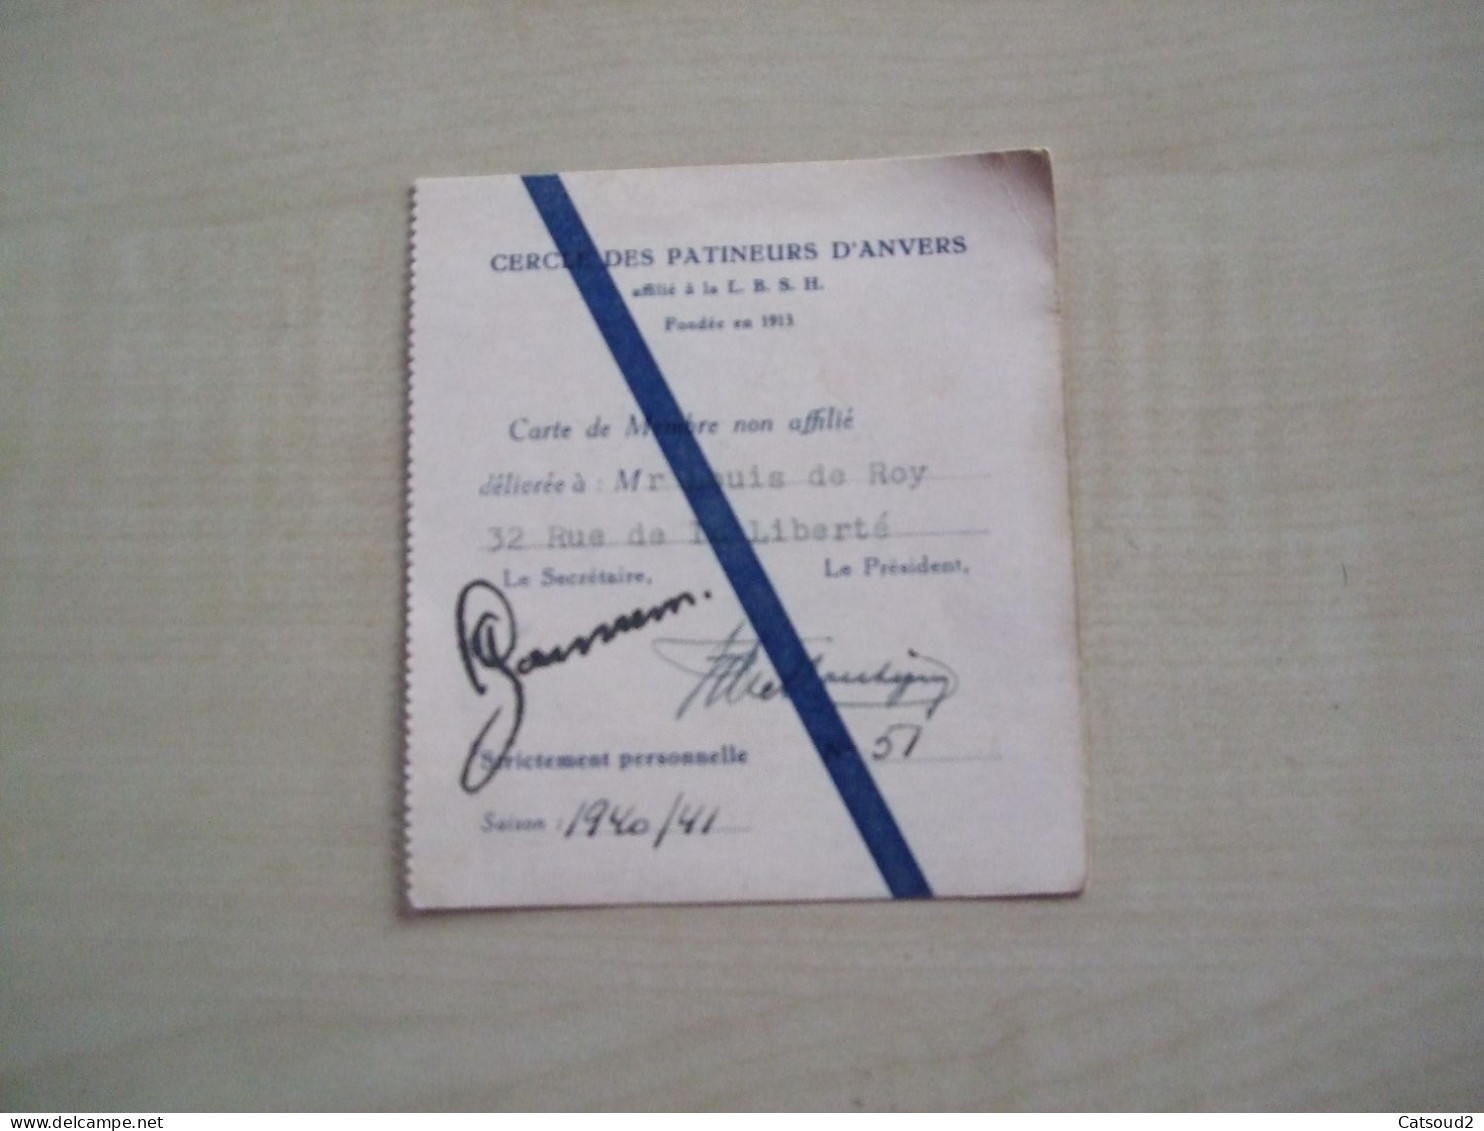 Carte De Membre Ancienne 1940/41 CERCLE DES PATINEURS D'ANVERS - Lidmaatschapskaarten